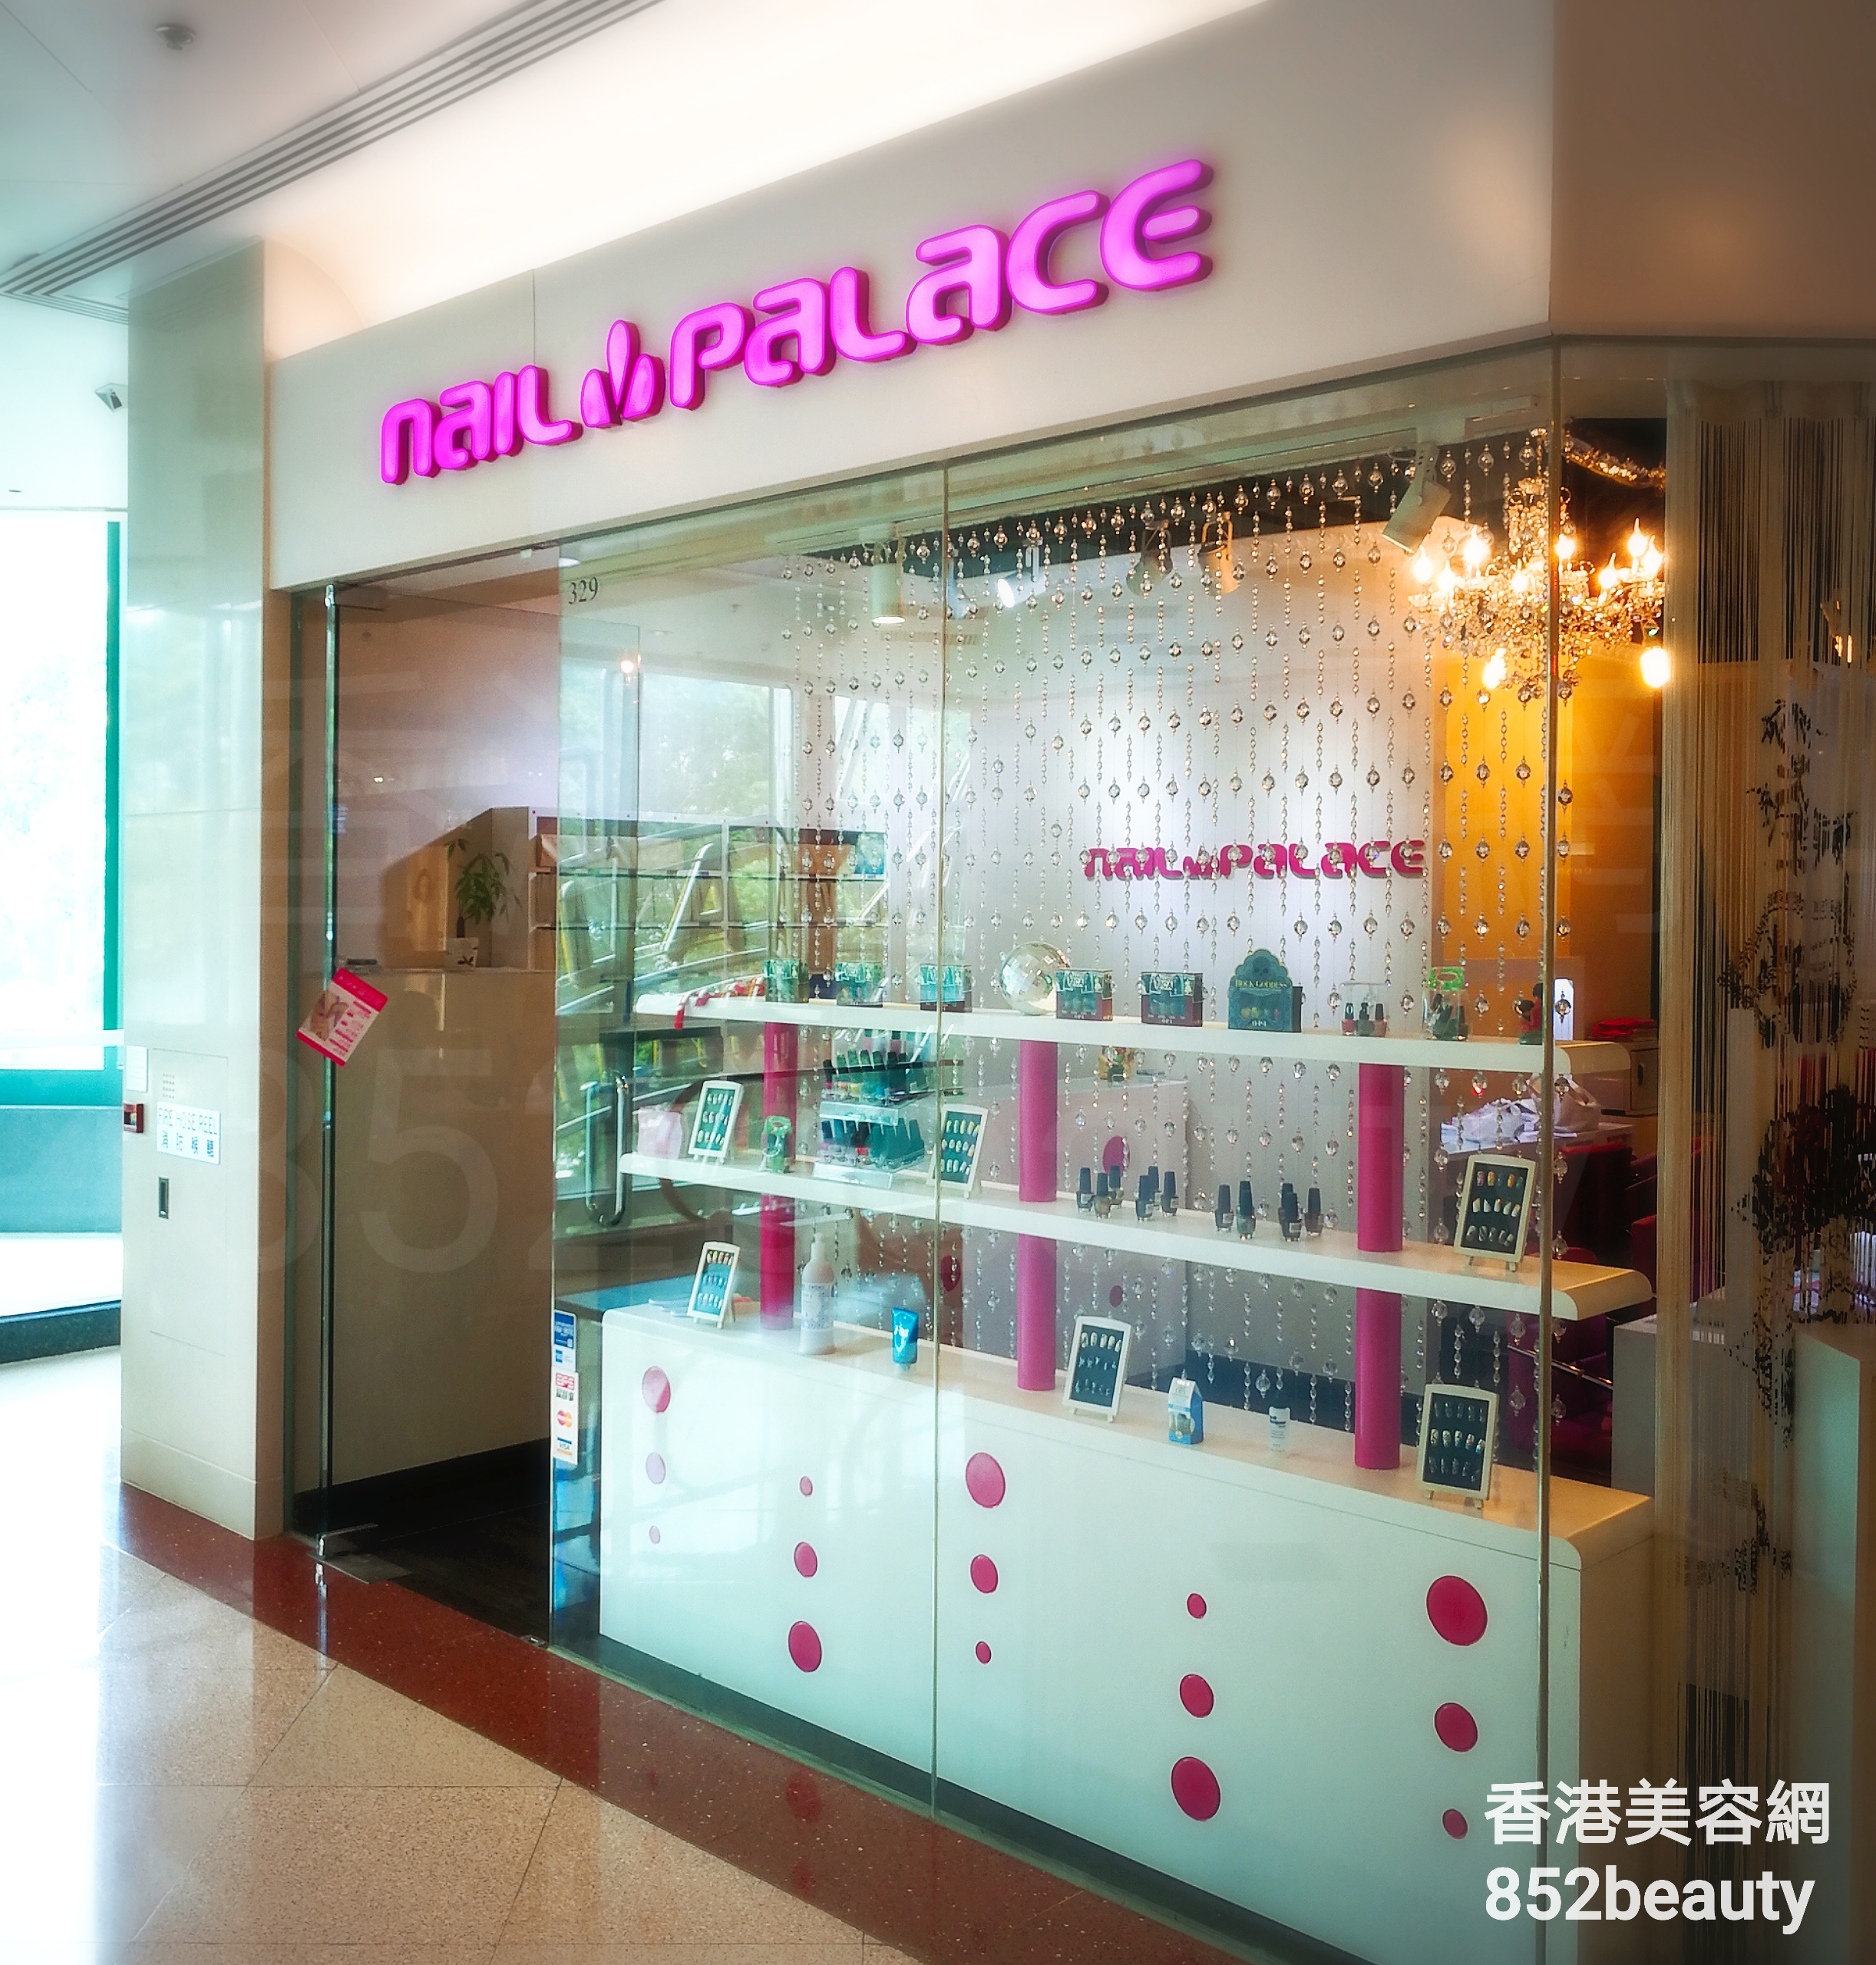 香港美容網 Hong Kong Beauty Salon 美容院 / 美容師: Nail Palace